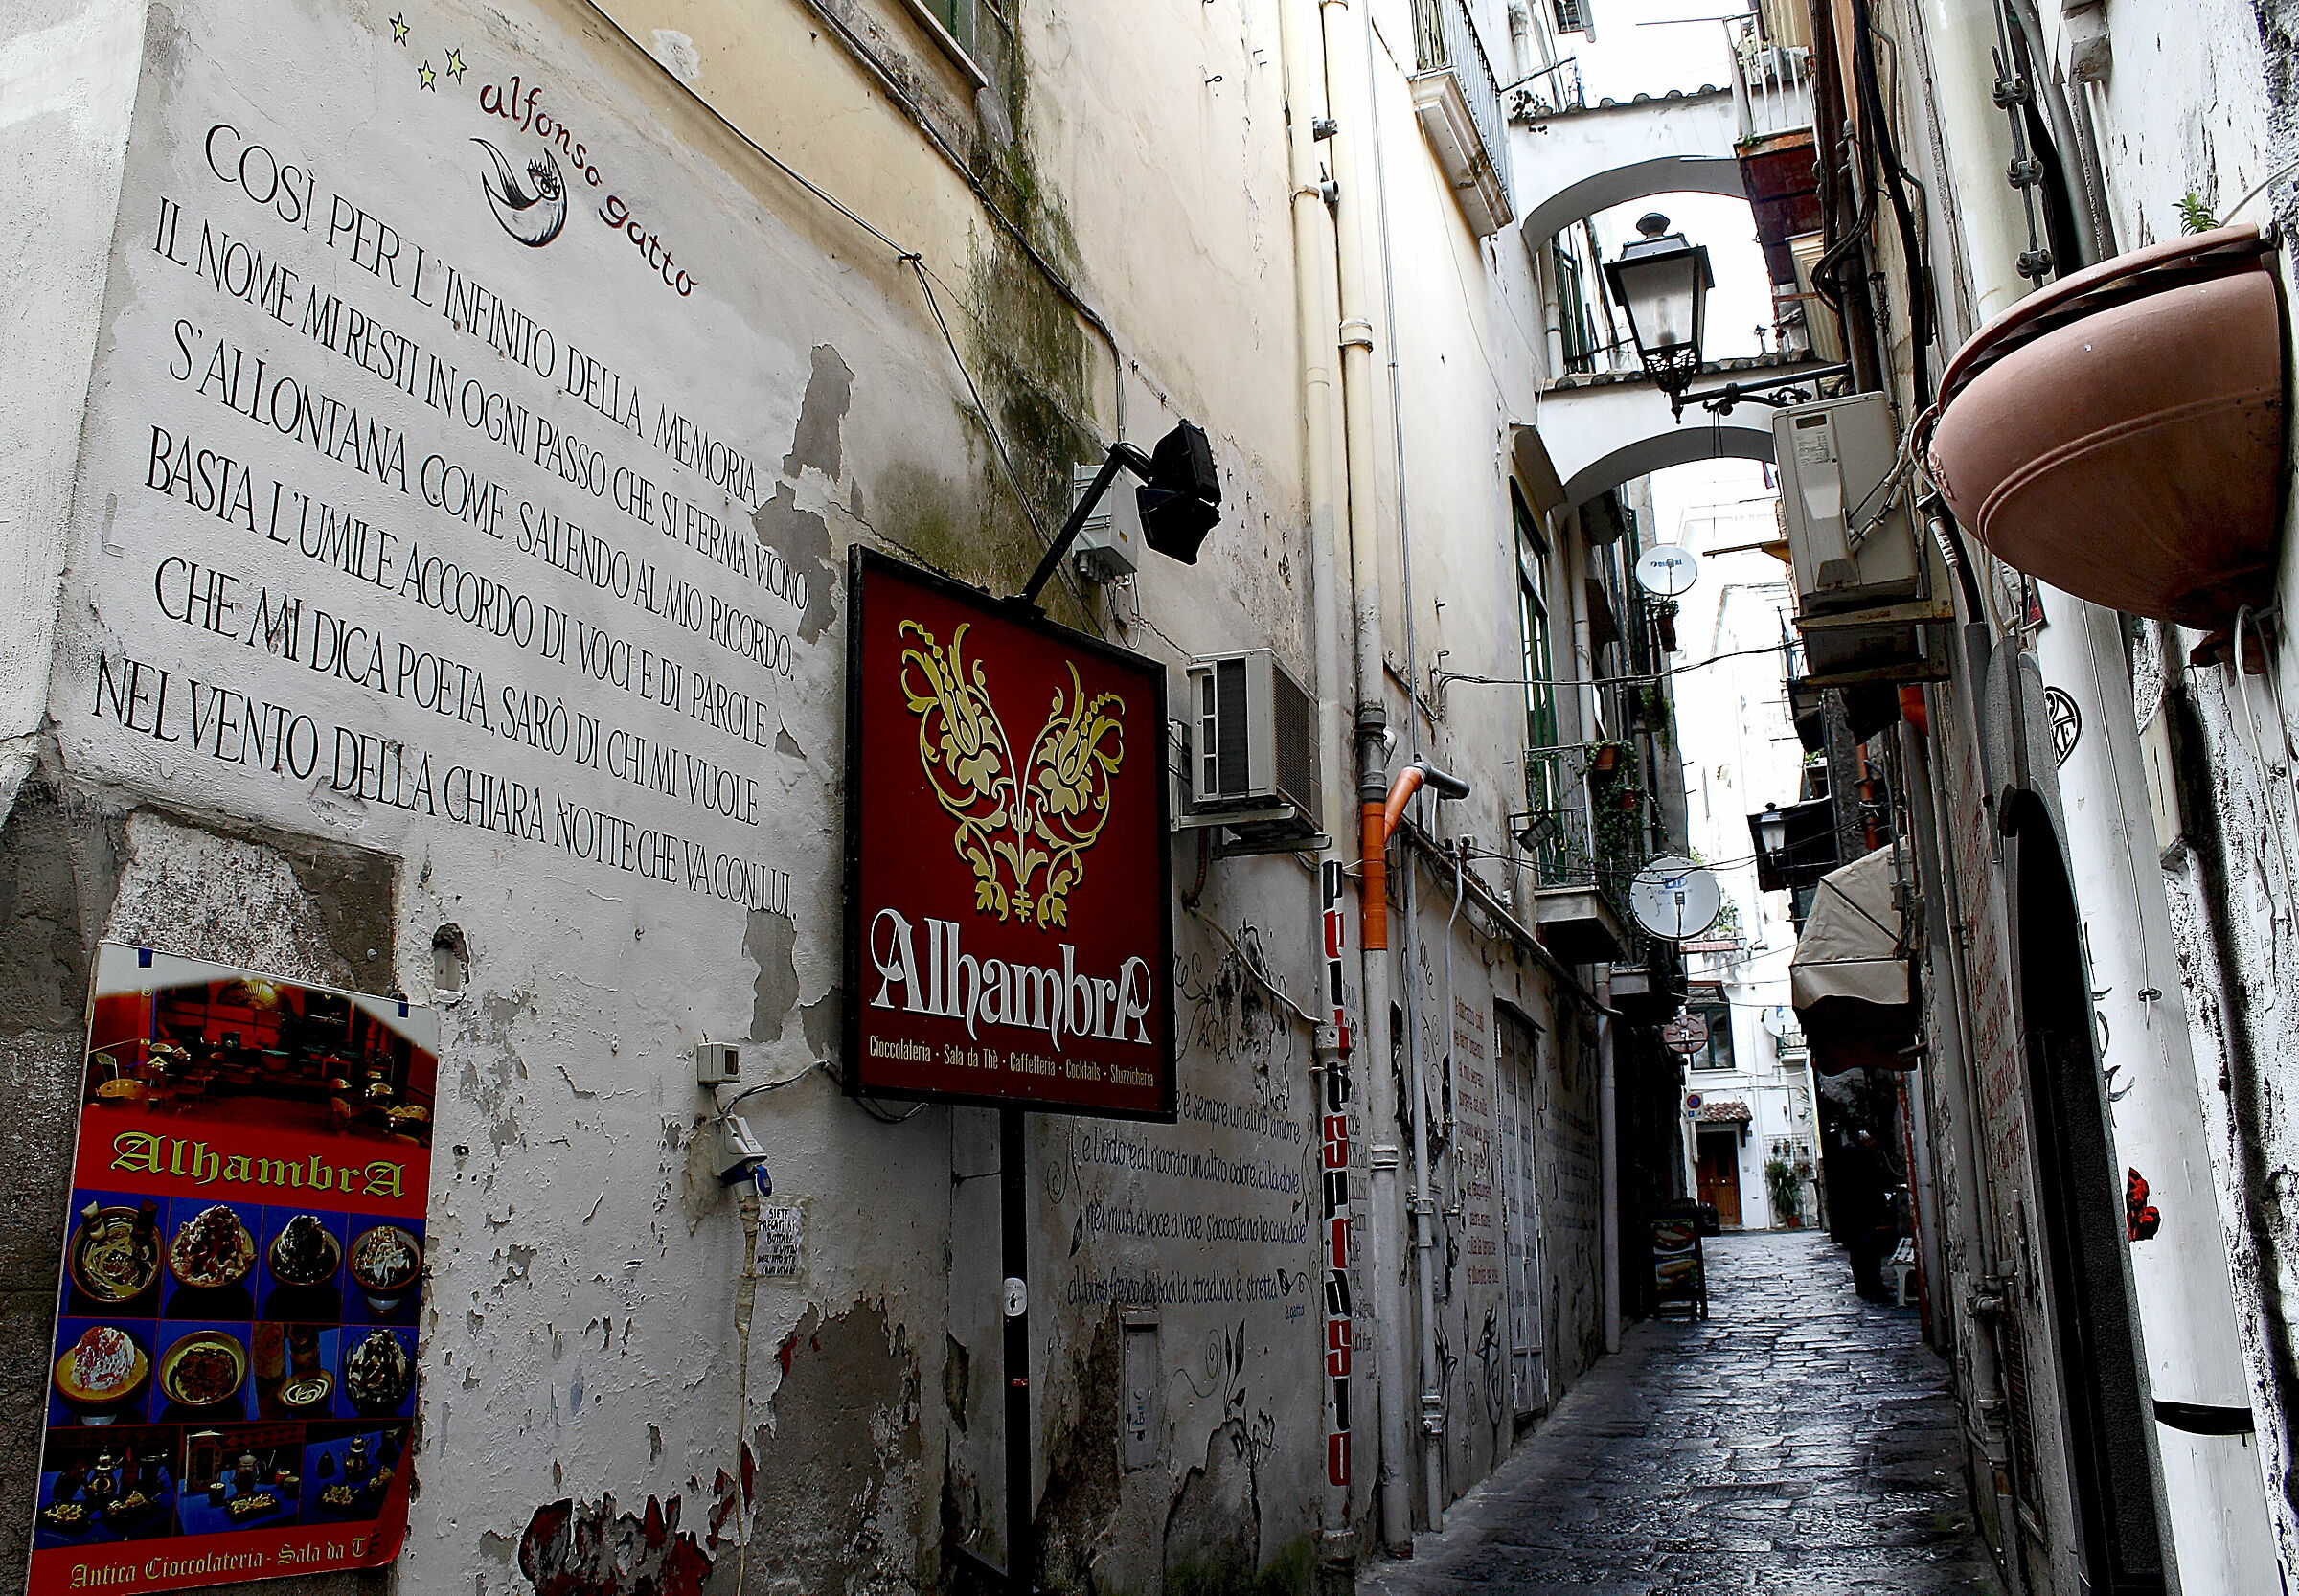 "Alfonso Gatto through the alleys..."...